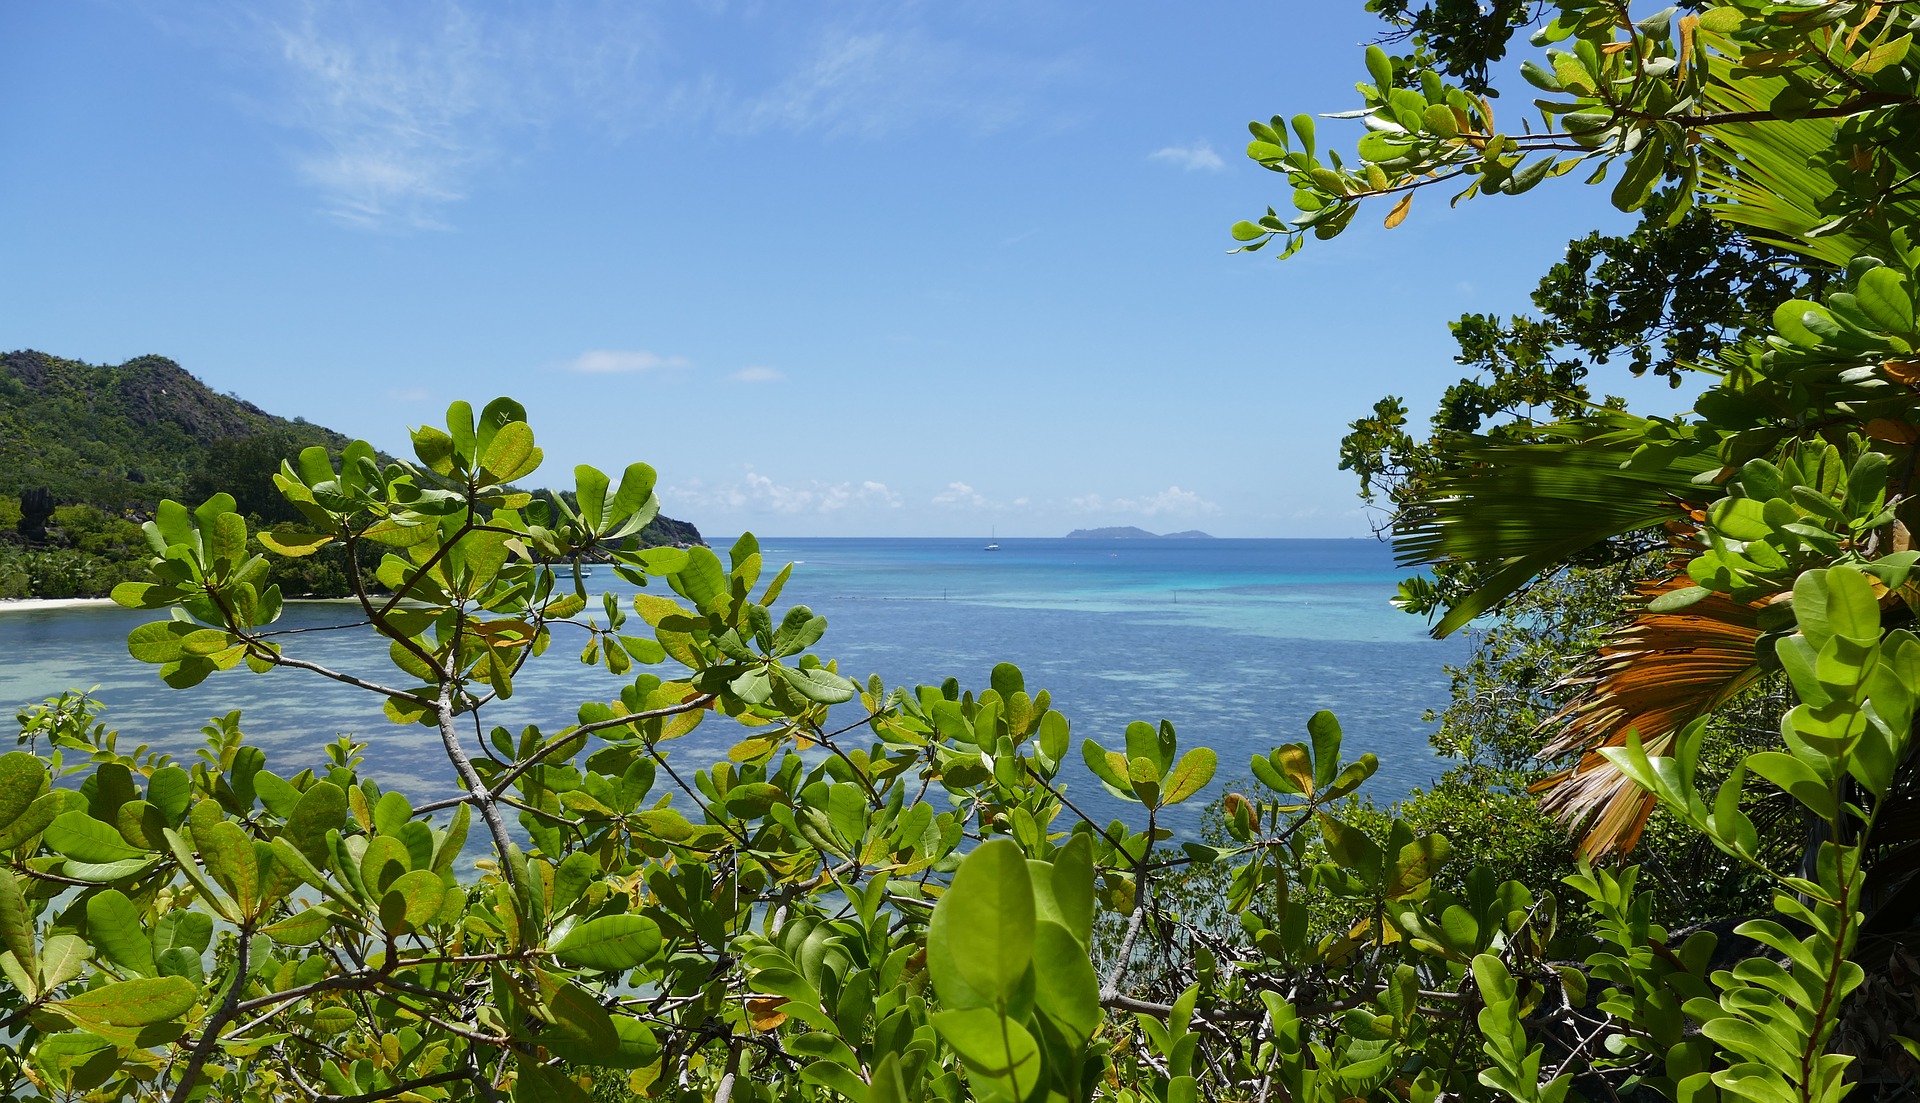 Curieuse Island Seychelles